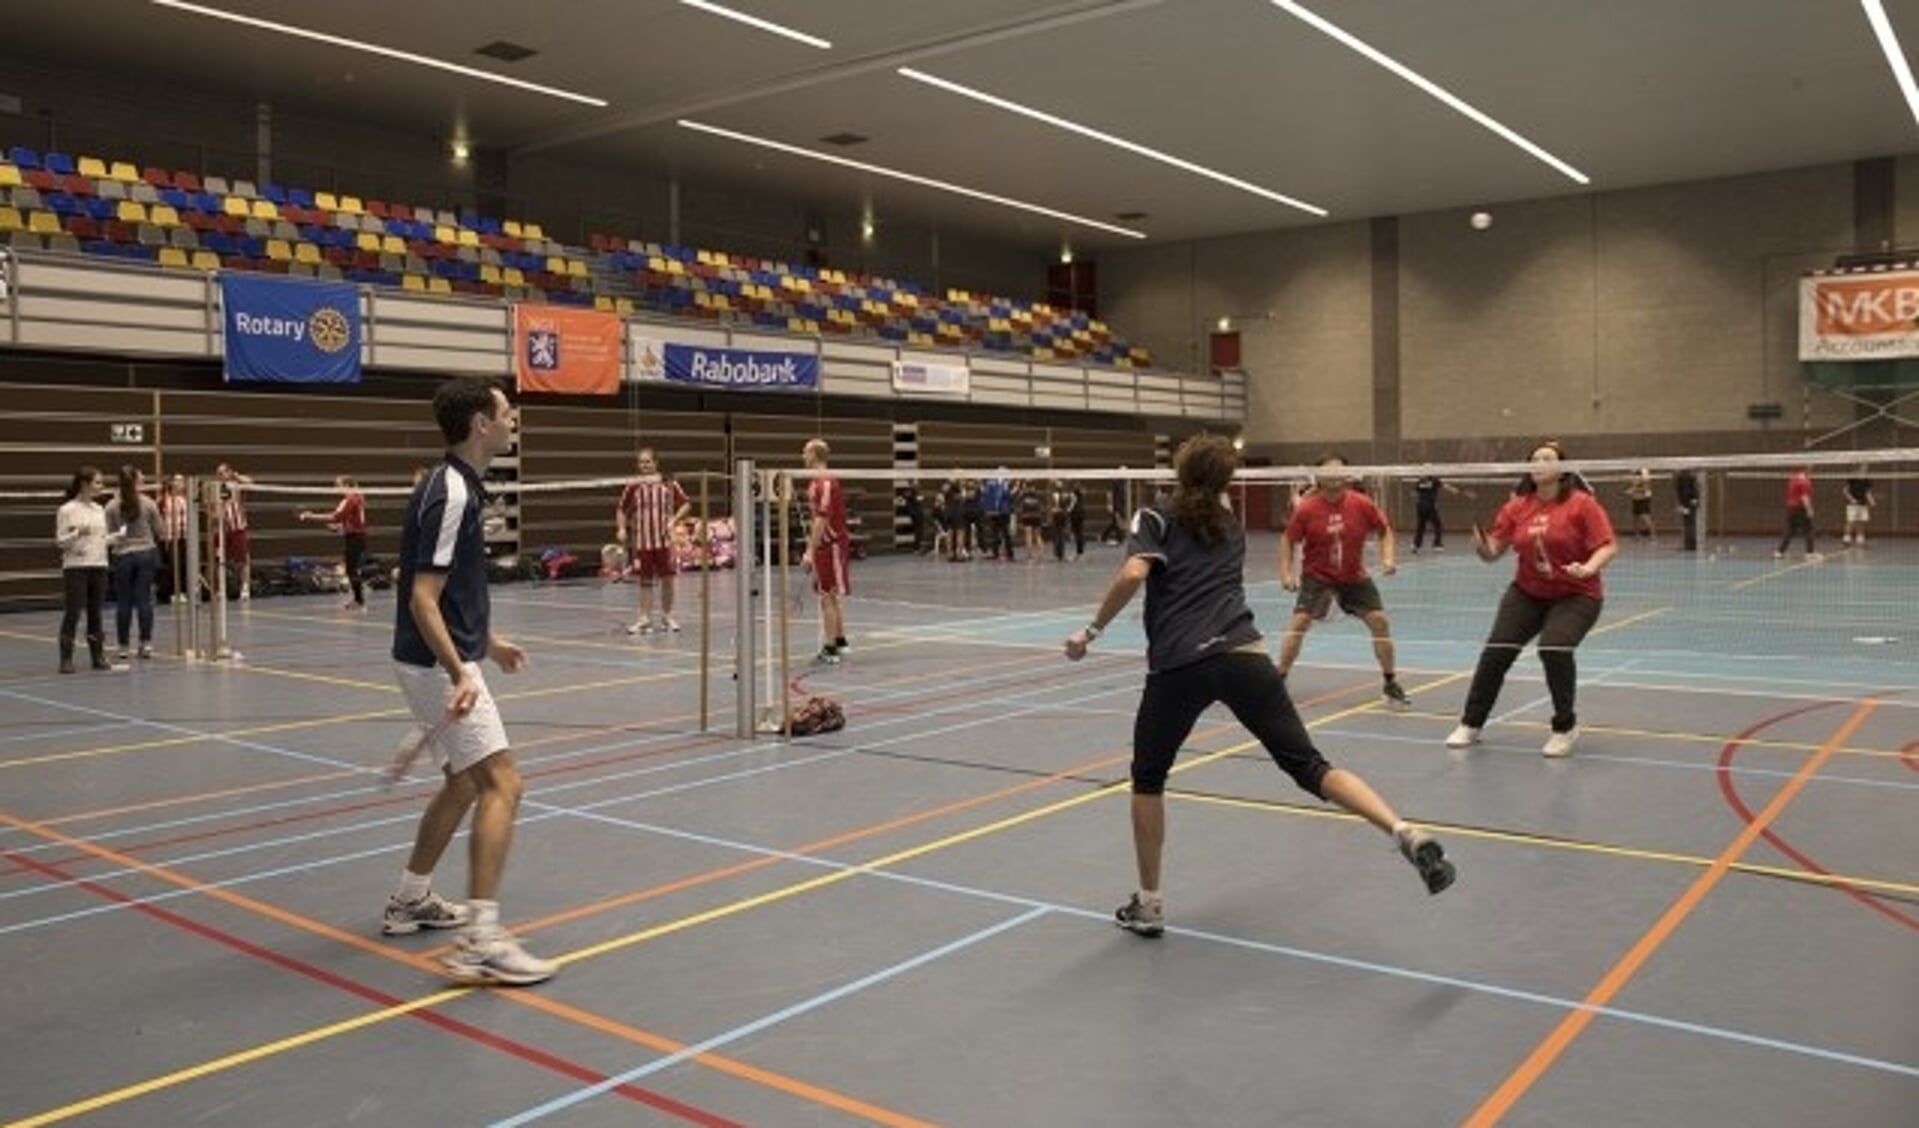 Sporten is fijn, zoals hier badminton, een van de sporten tijdens de Rotary Sportdag Veenendaal. (Archieffoto D. de Louw)